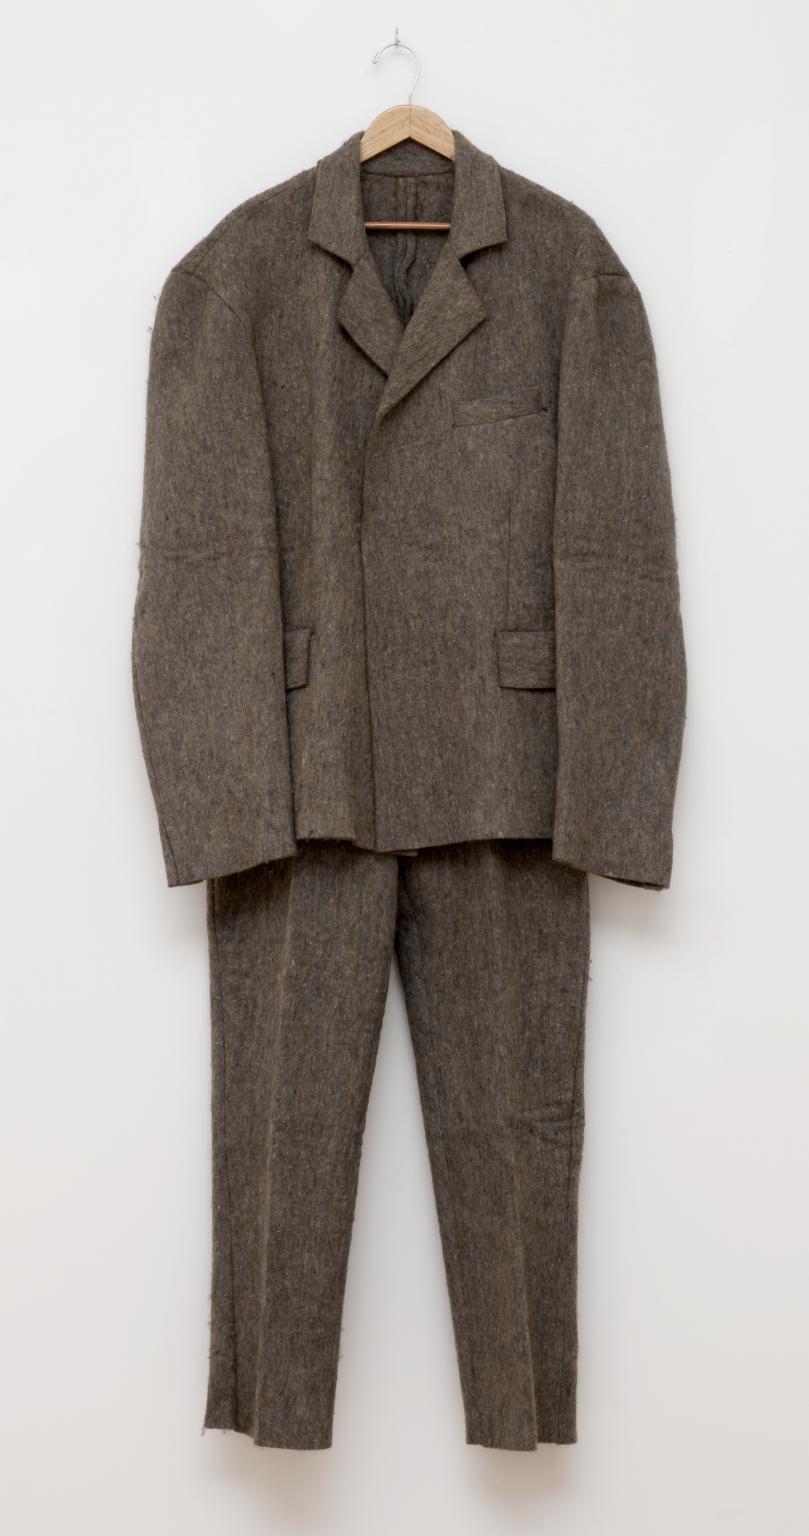 Centro comercial Desarmado amortiguar Felt Suit', Joseph Beuys, 1970 | Tate